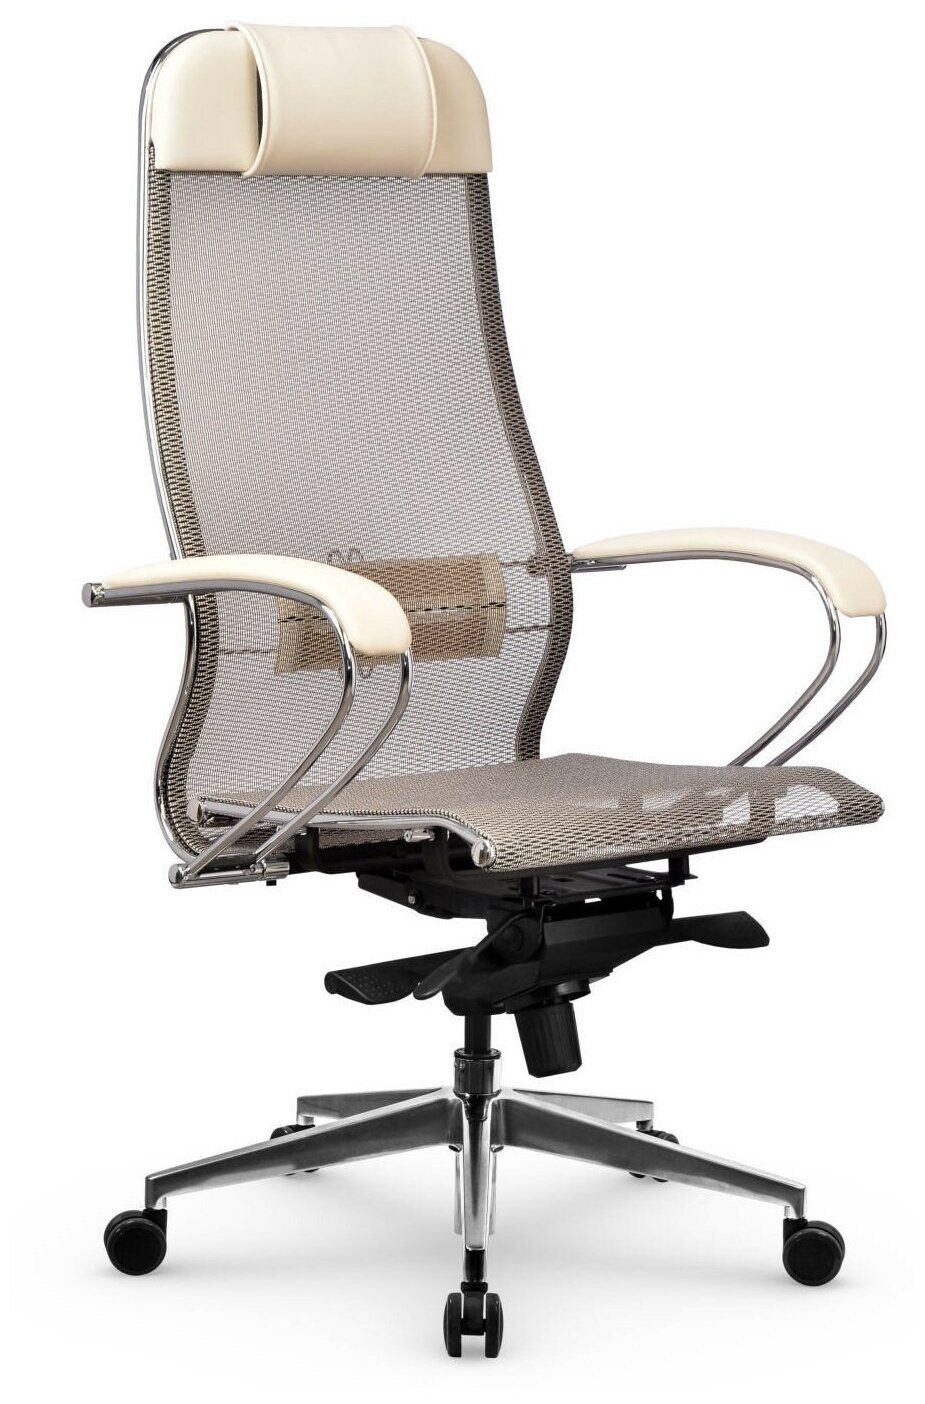 Компьютерное кресло Метта Samurai S-1.041 офисное, обивка: текстиль/искусственная кожа, цвет: молочный